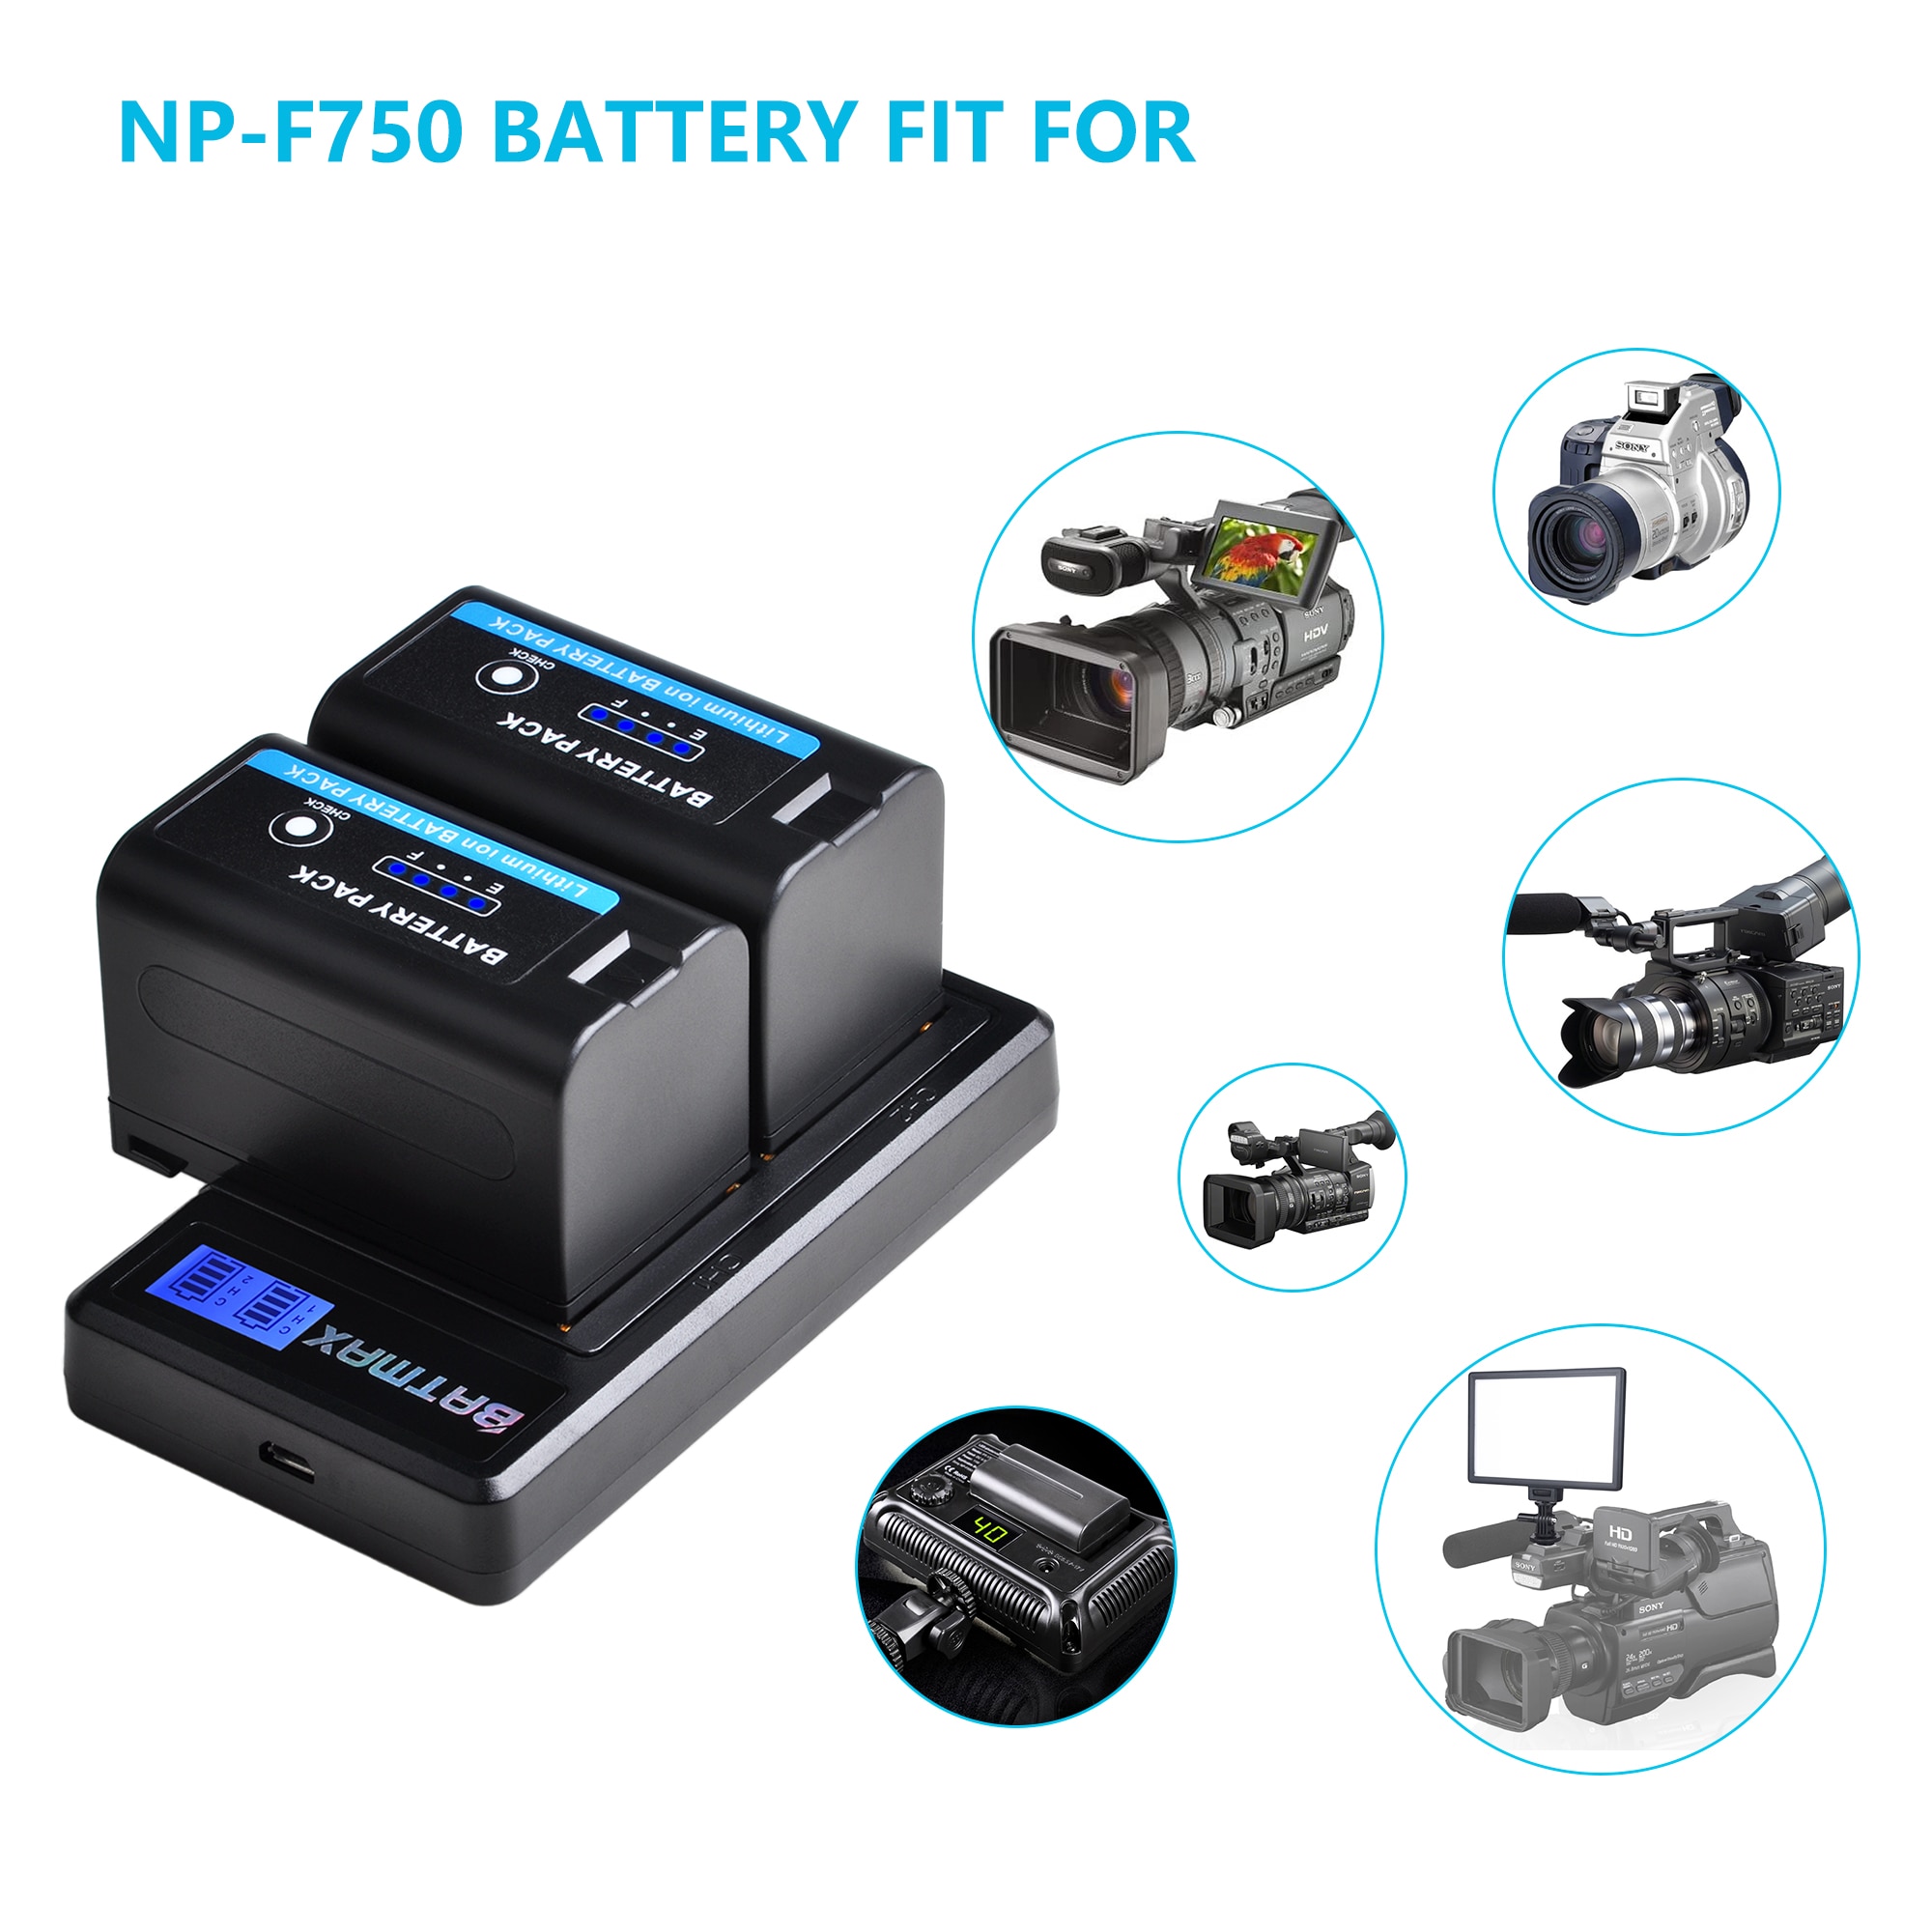 5200 mah led-indikator np  f750 np f770 np-f750 batteri akku + lcd usb-oplader til sony np  f970 f960 f550 f570 qm91d ccd -rv100